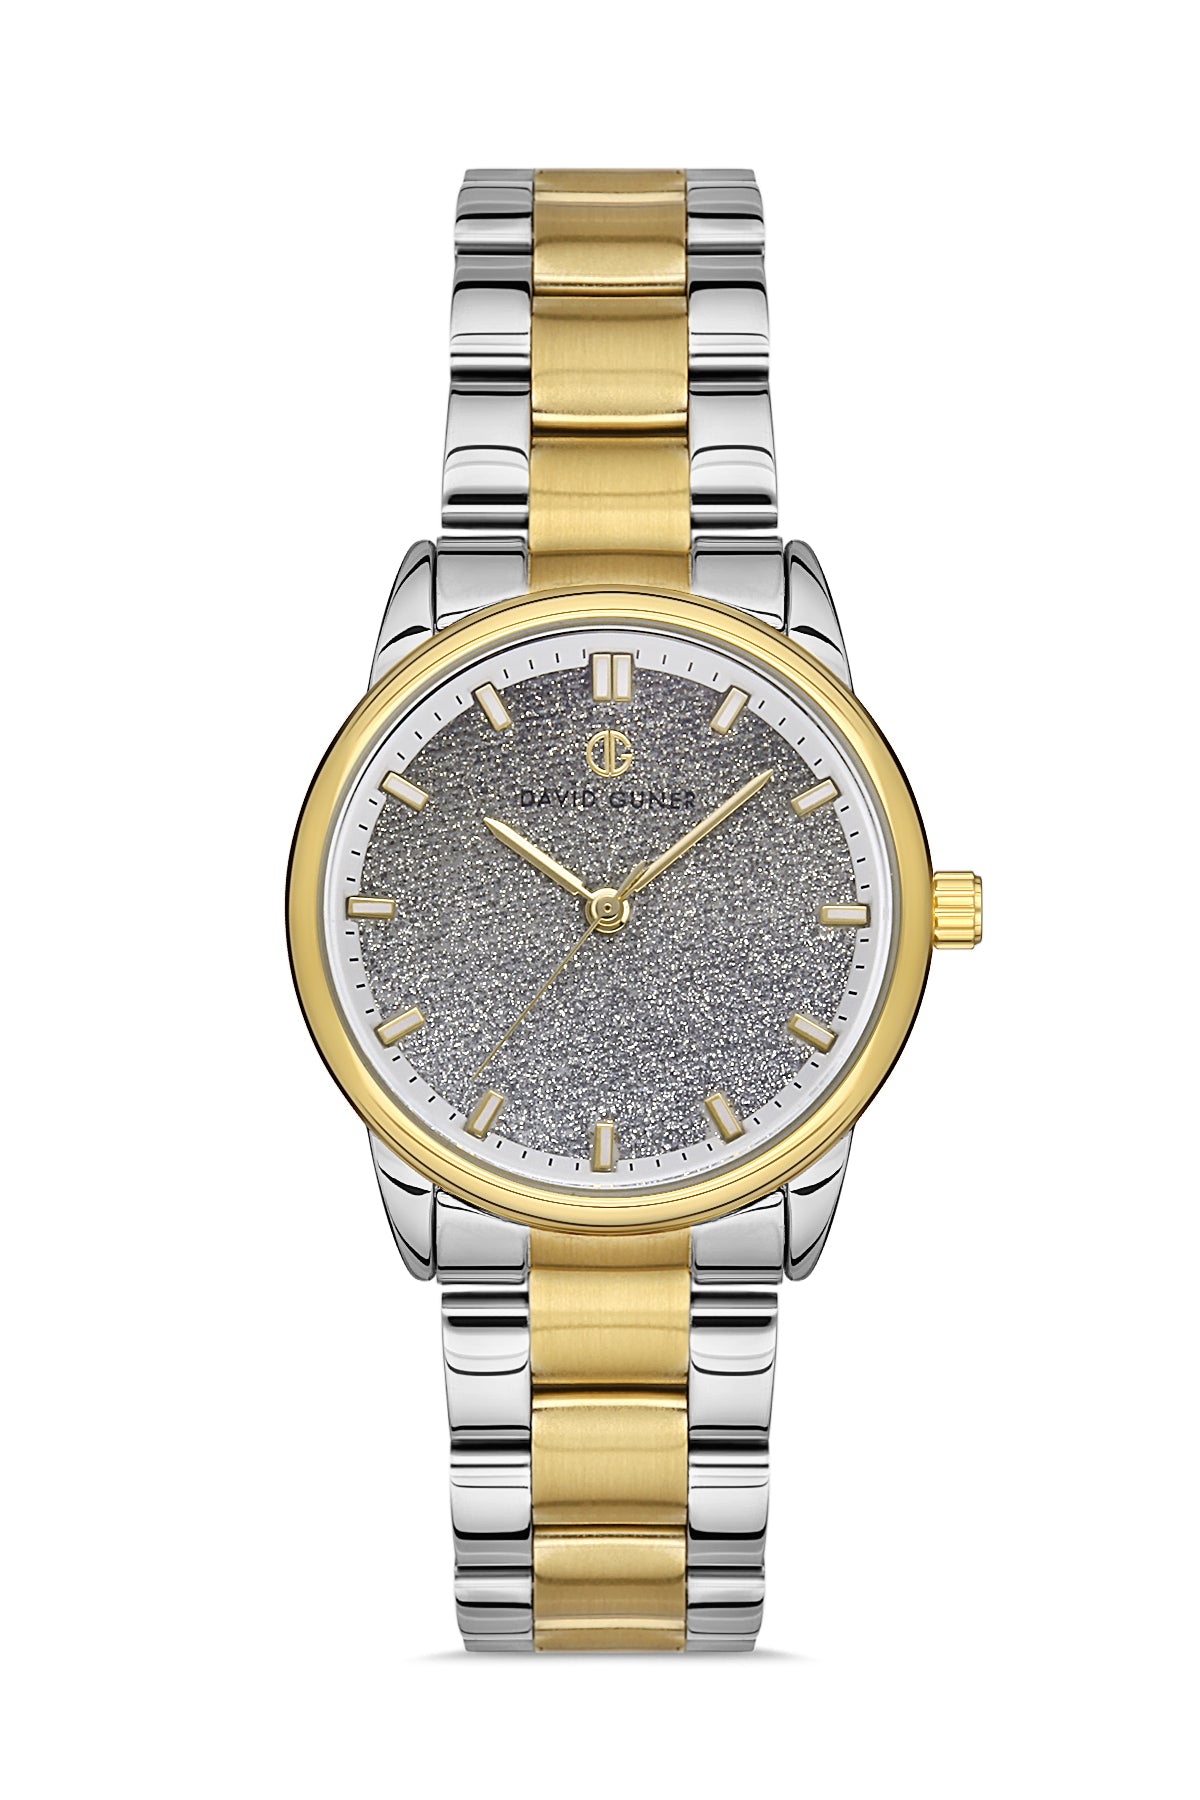 DAVID GUNER Yellow White Coated Women's Wristwatch